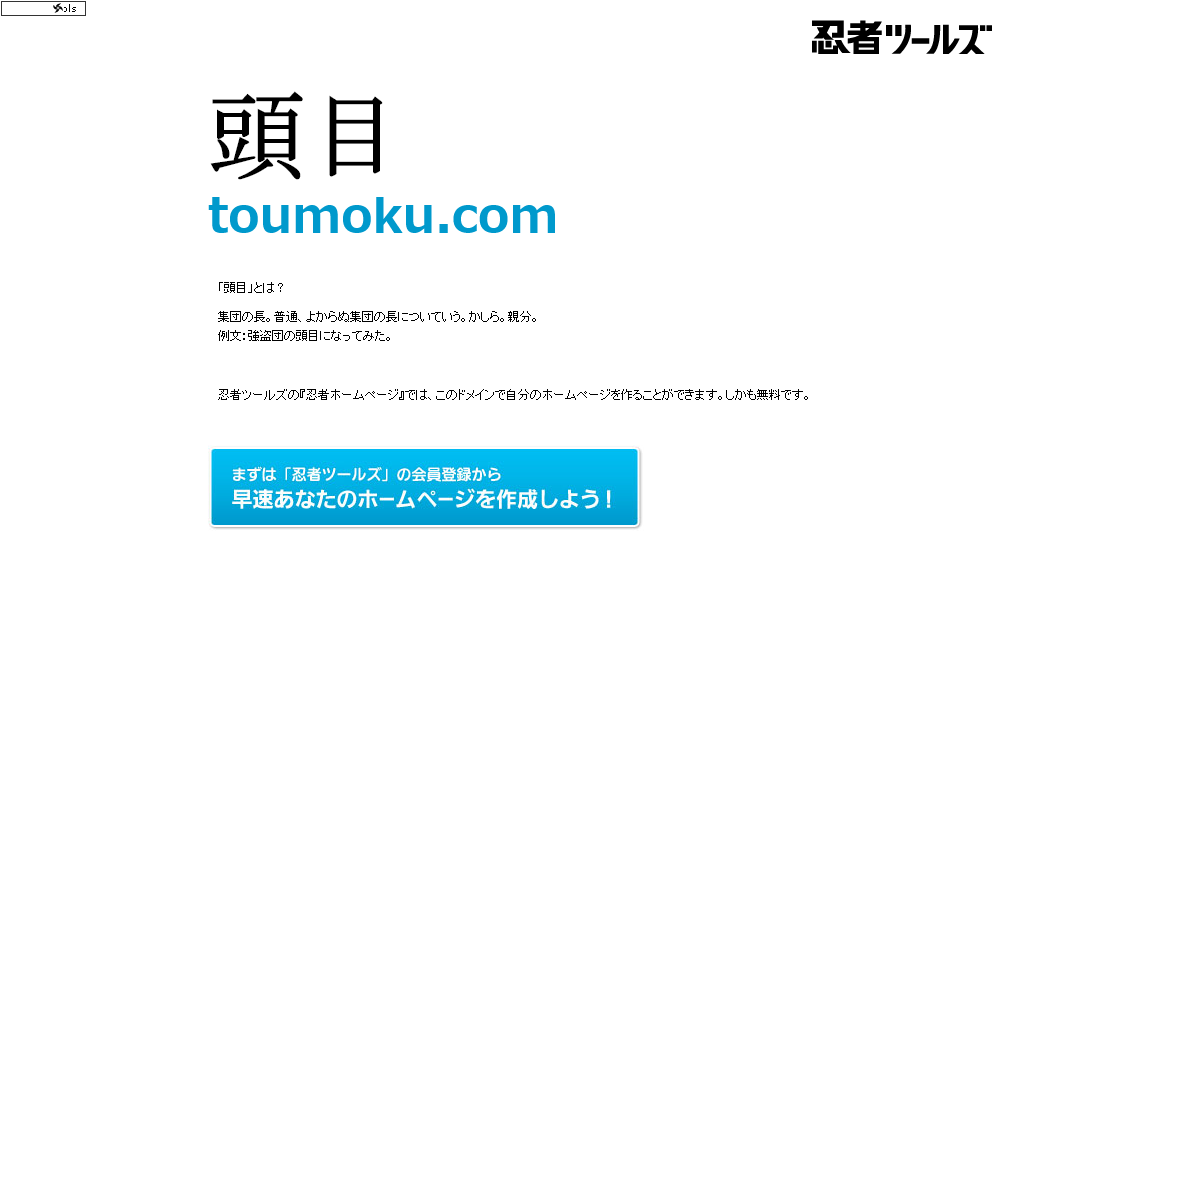 A complete backup of toumoku.com